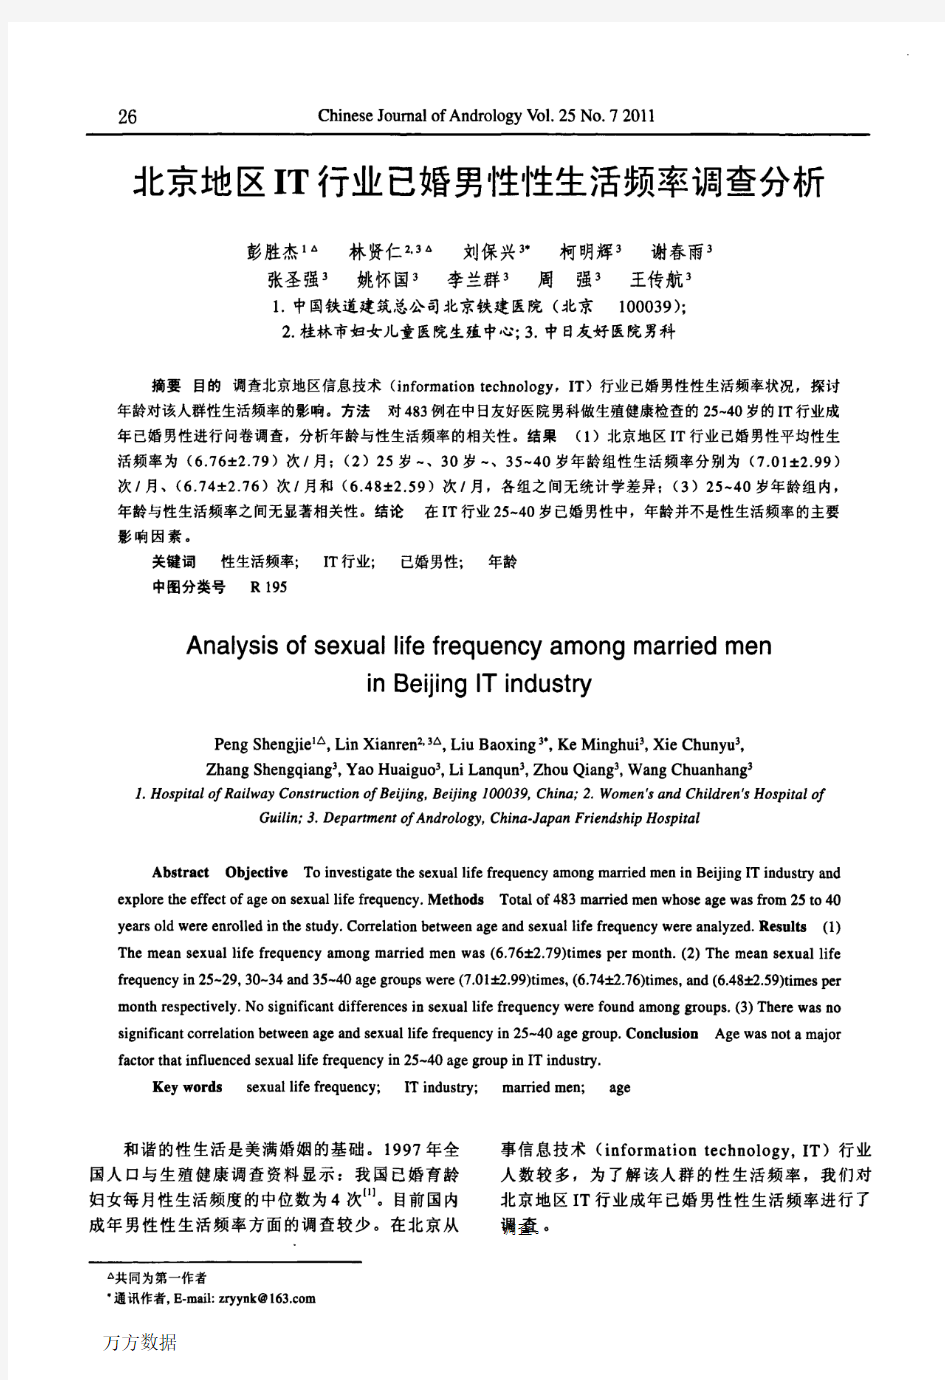 北京地区IT行业已婚男性性生活频率调查分析